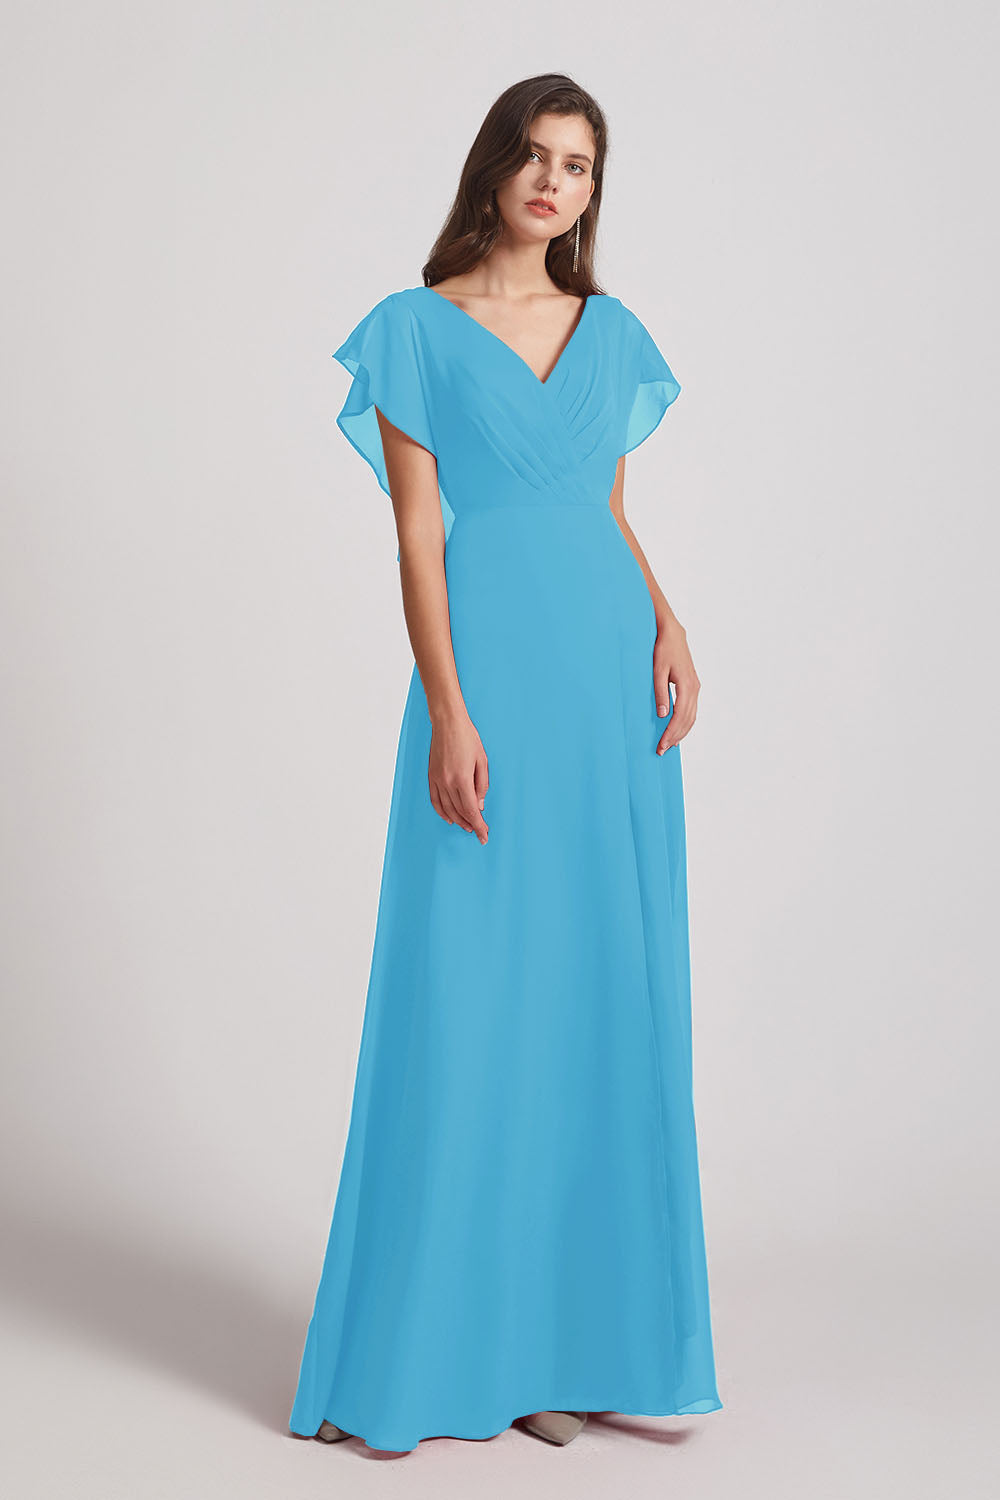 Alfa Bridal Ice Blue V-Neck Chiffon Long Backless Bridesmaid Dresses with Side Slit (AF0071)